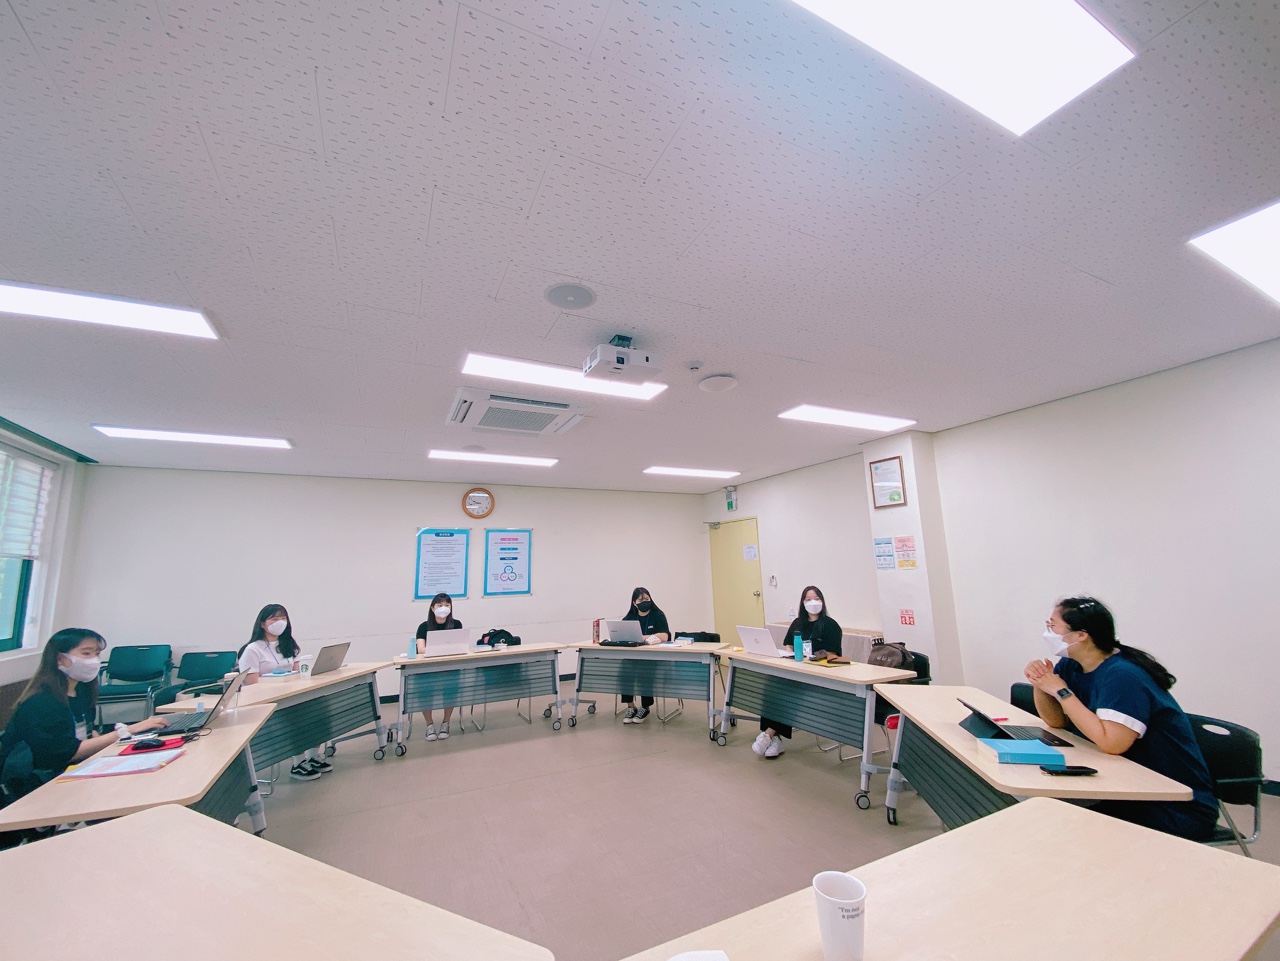 (왼쪽사진)실습생들이 회의실에 둘러 앉아 교육에 참여하는 모습